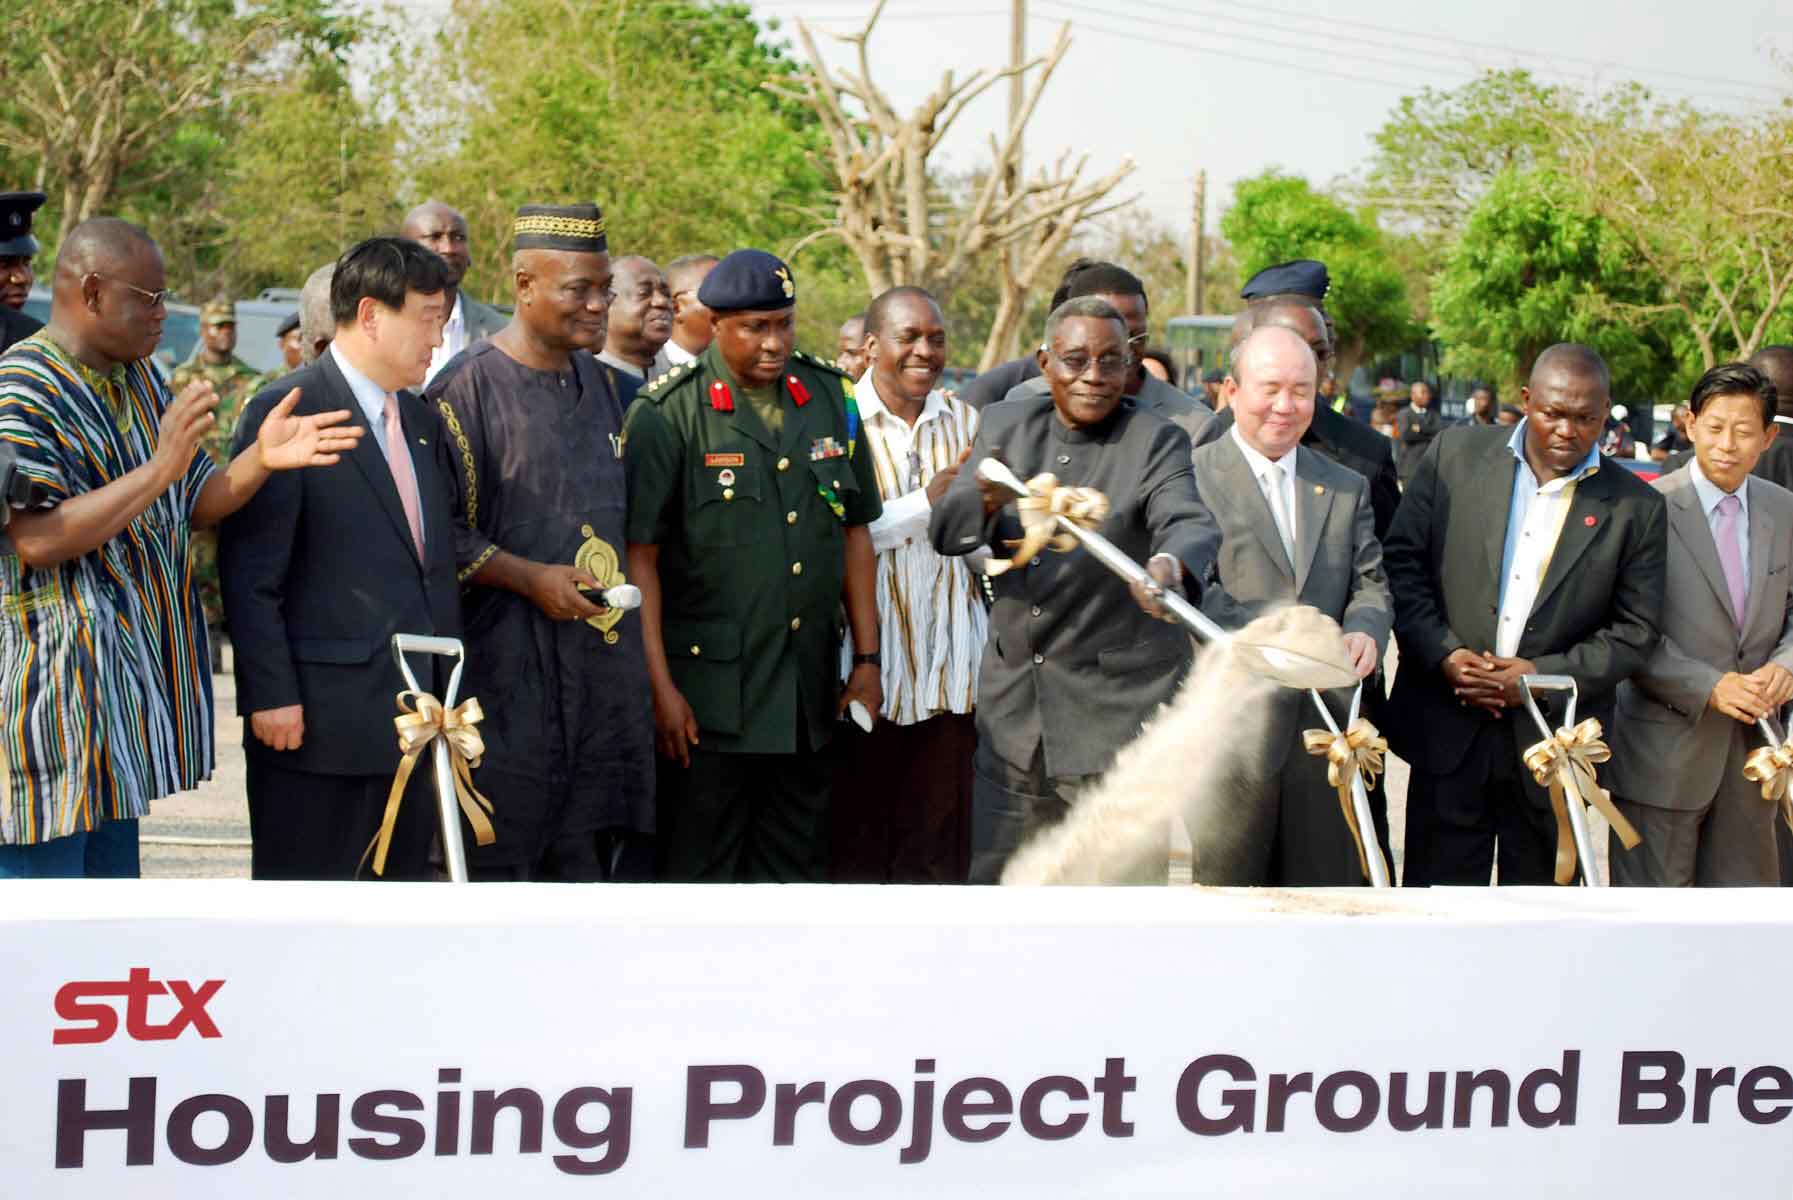 지난 1월 가나의 수도 아크라에서 가진 가나 국민주택건설 기공식에서 존 아타 밀스(오른쪽 네 번째) 대통령이 삽으로 흙을 뜨고 있는 모습을 이희범(왼쪽 두 번째) STX에너지·중공업 회장 등 관계자들이 지켜보고 있다.  STX 제공